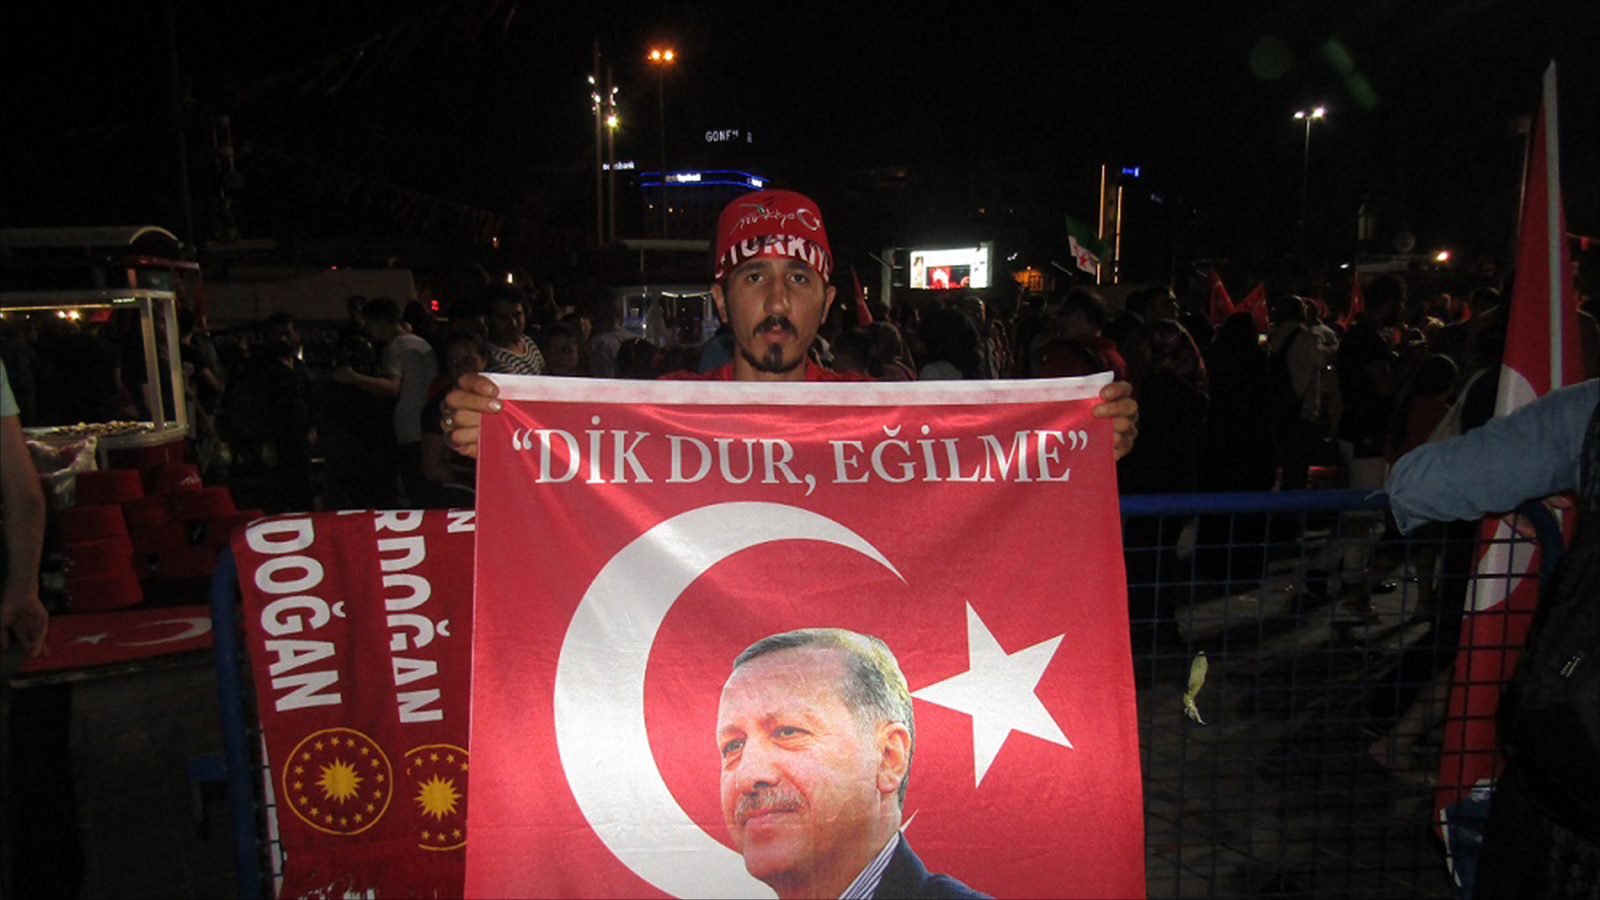 شاب يعرض علم تركيا عليه صورة أردوغان في ميدان تقسيم (الجزيرة)